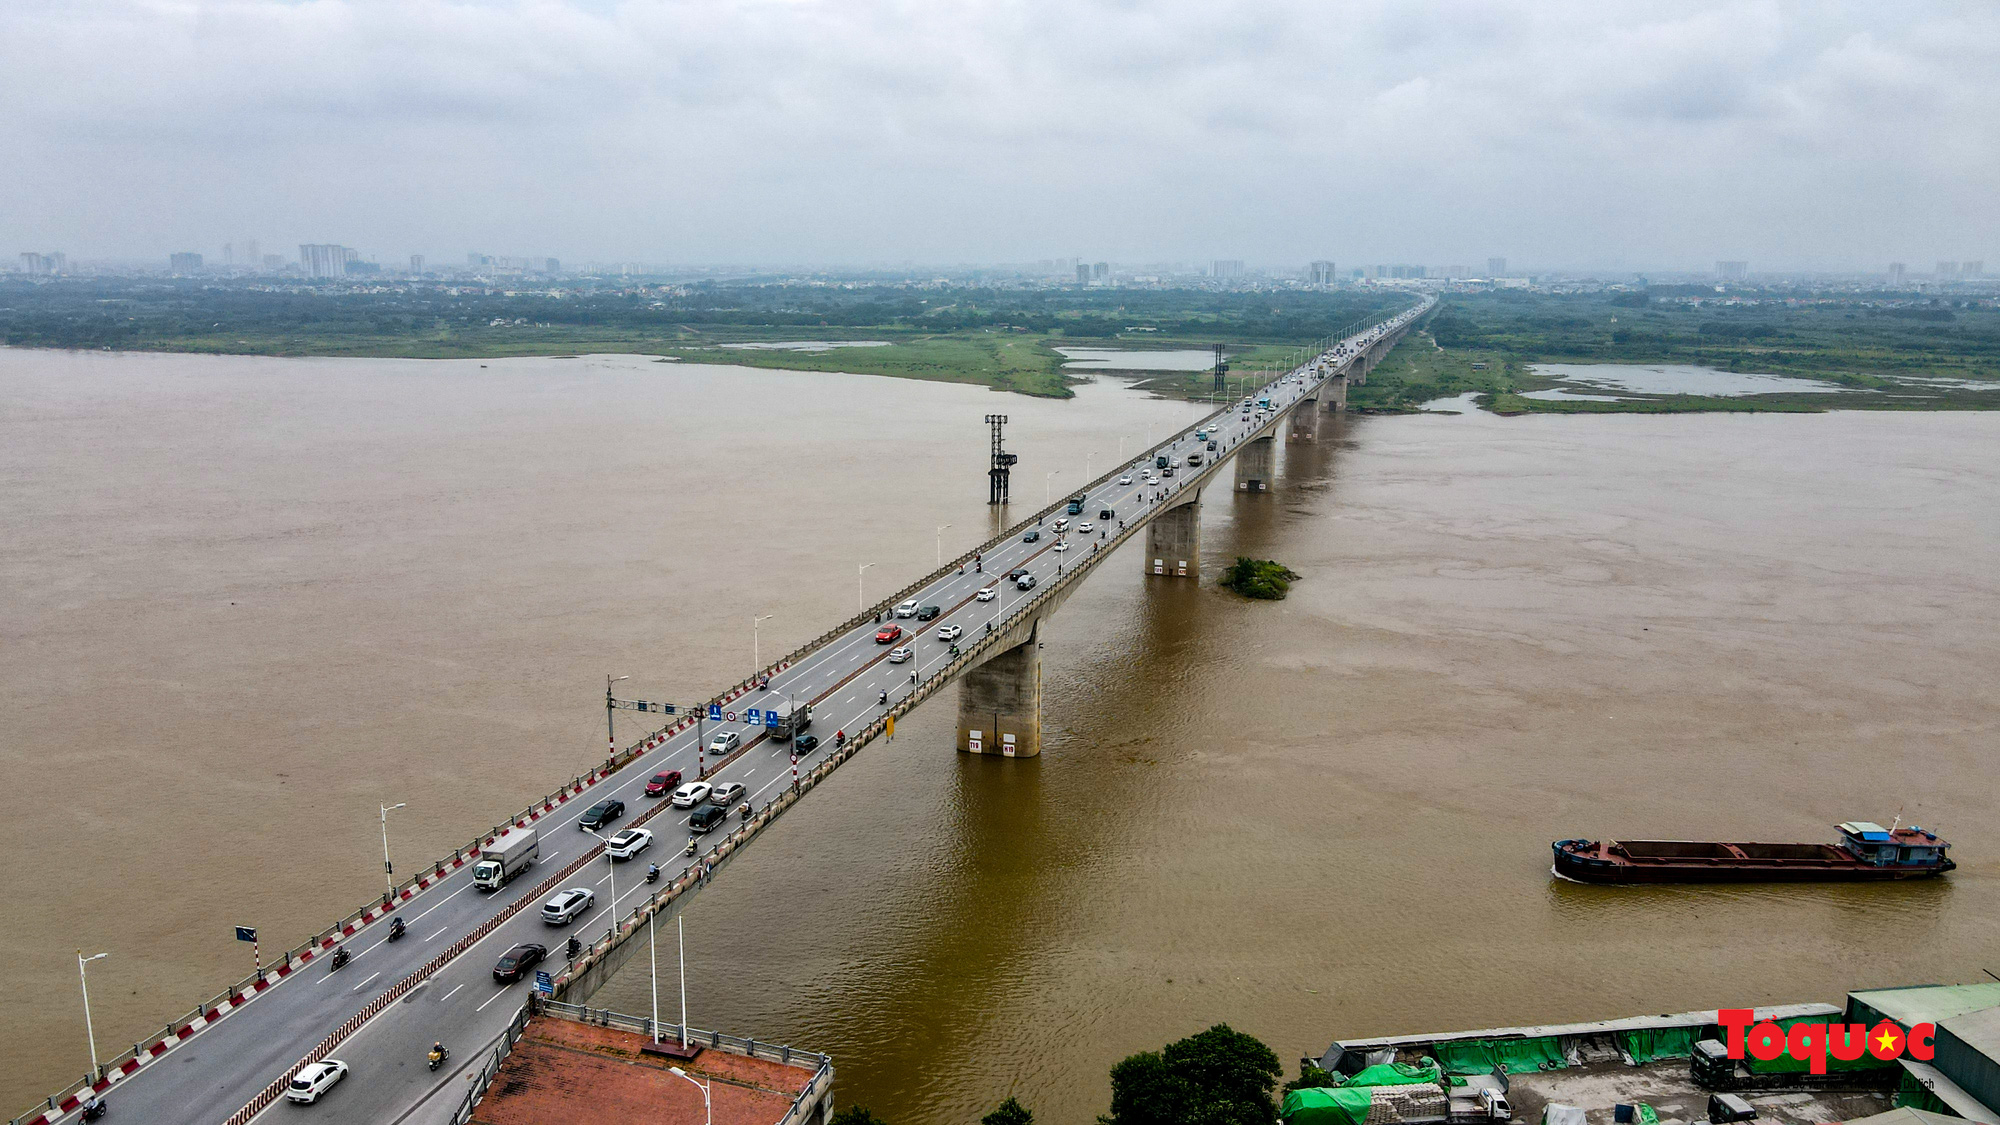 Cận cảnh những cây cầu bắc qua sông Hồng ở Thủ đô Hà Nội - Ảnh 15.